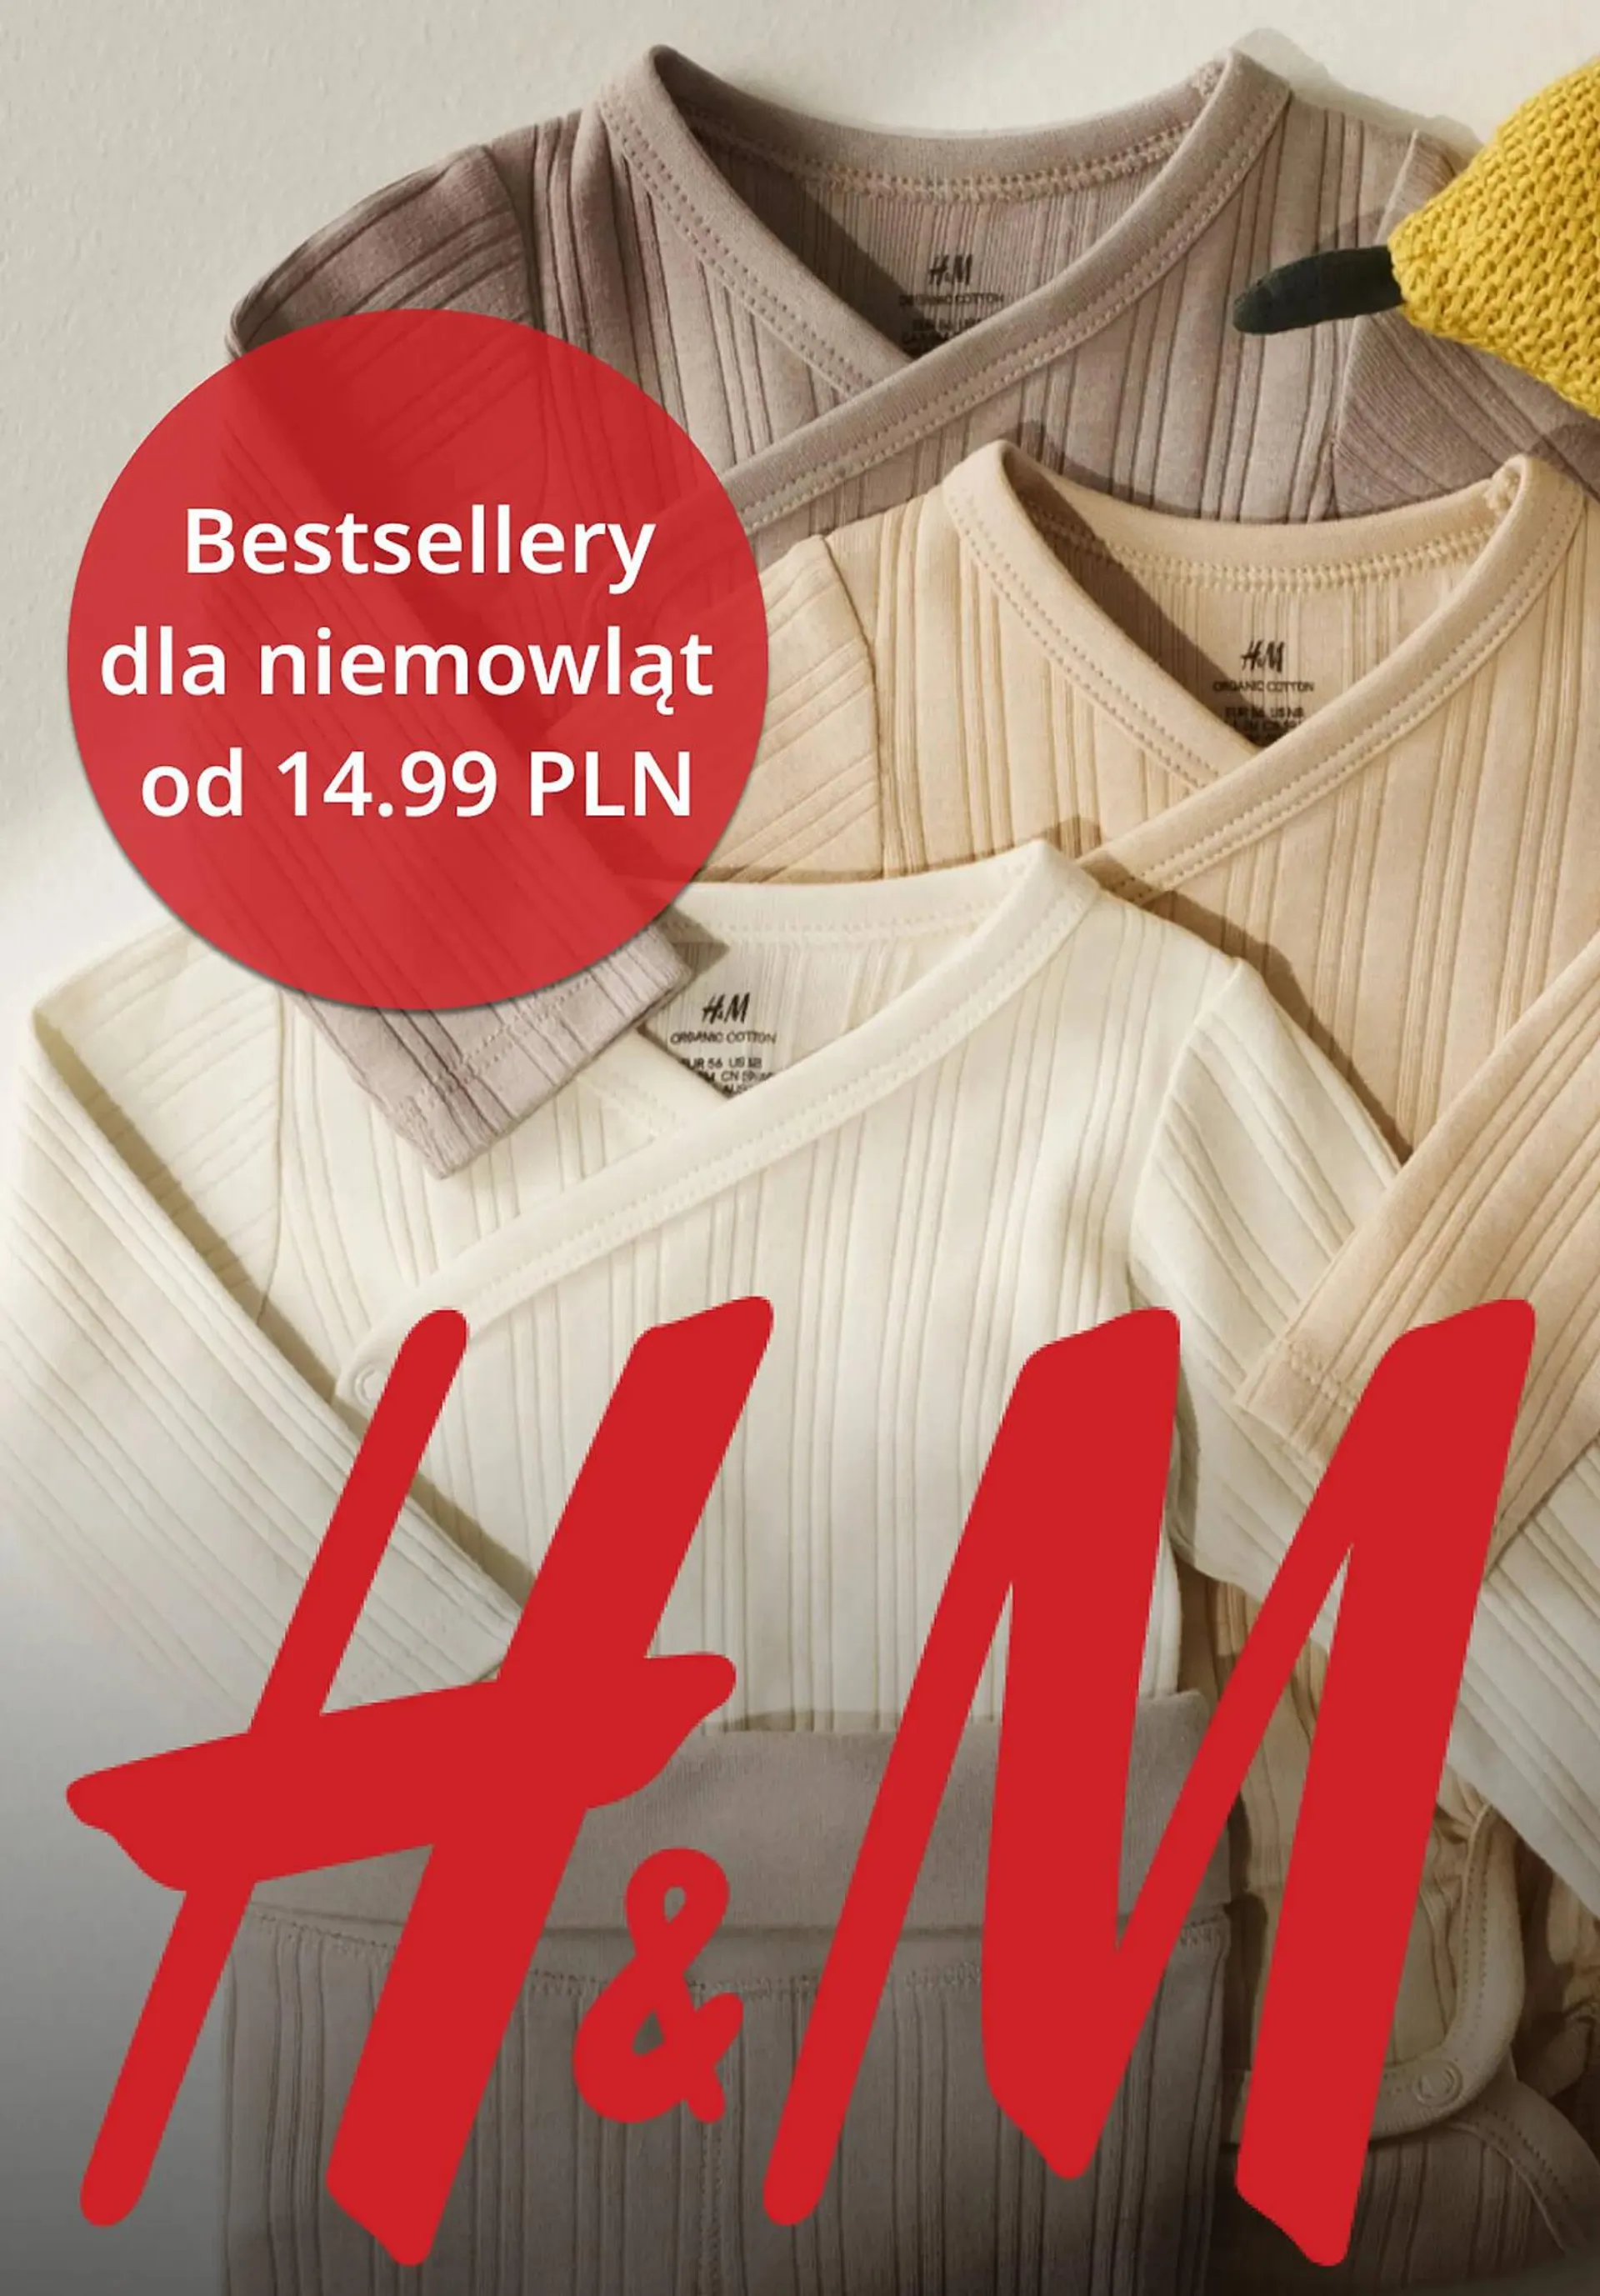 H&M gazetka - 1